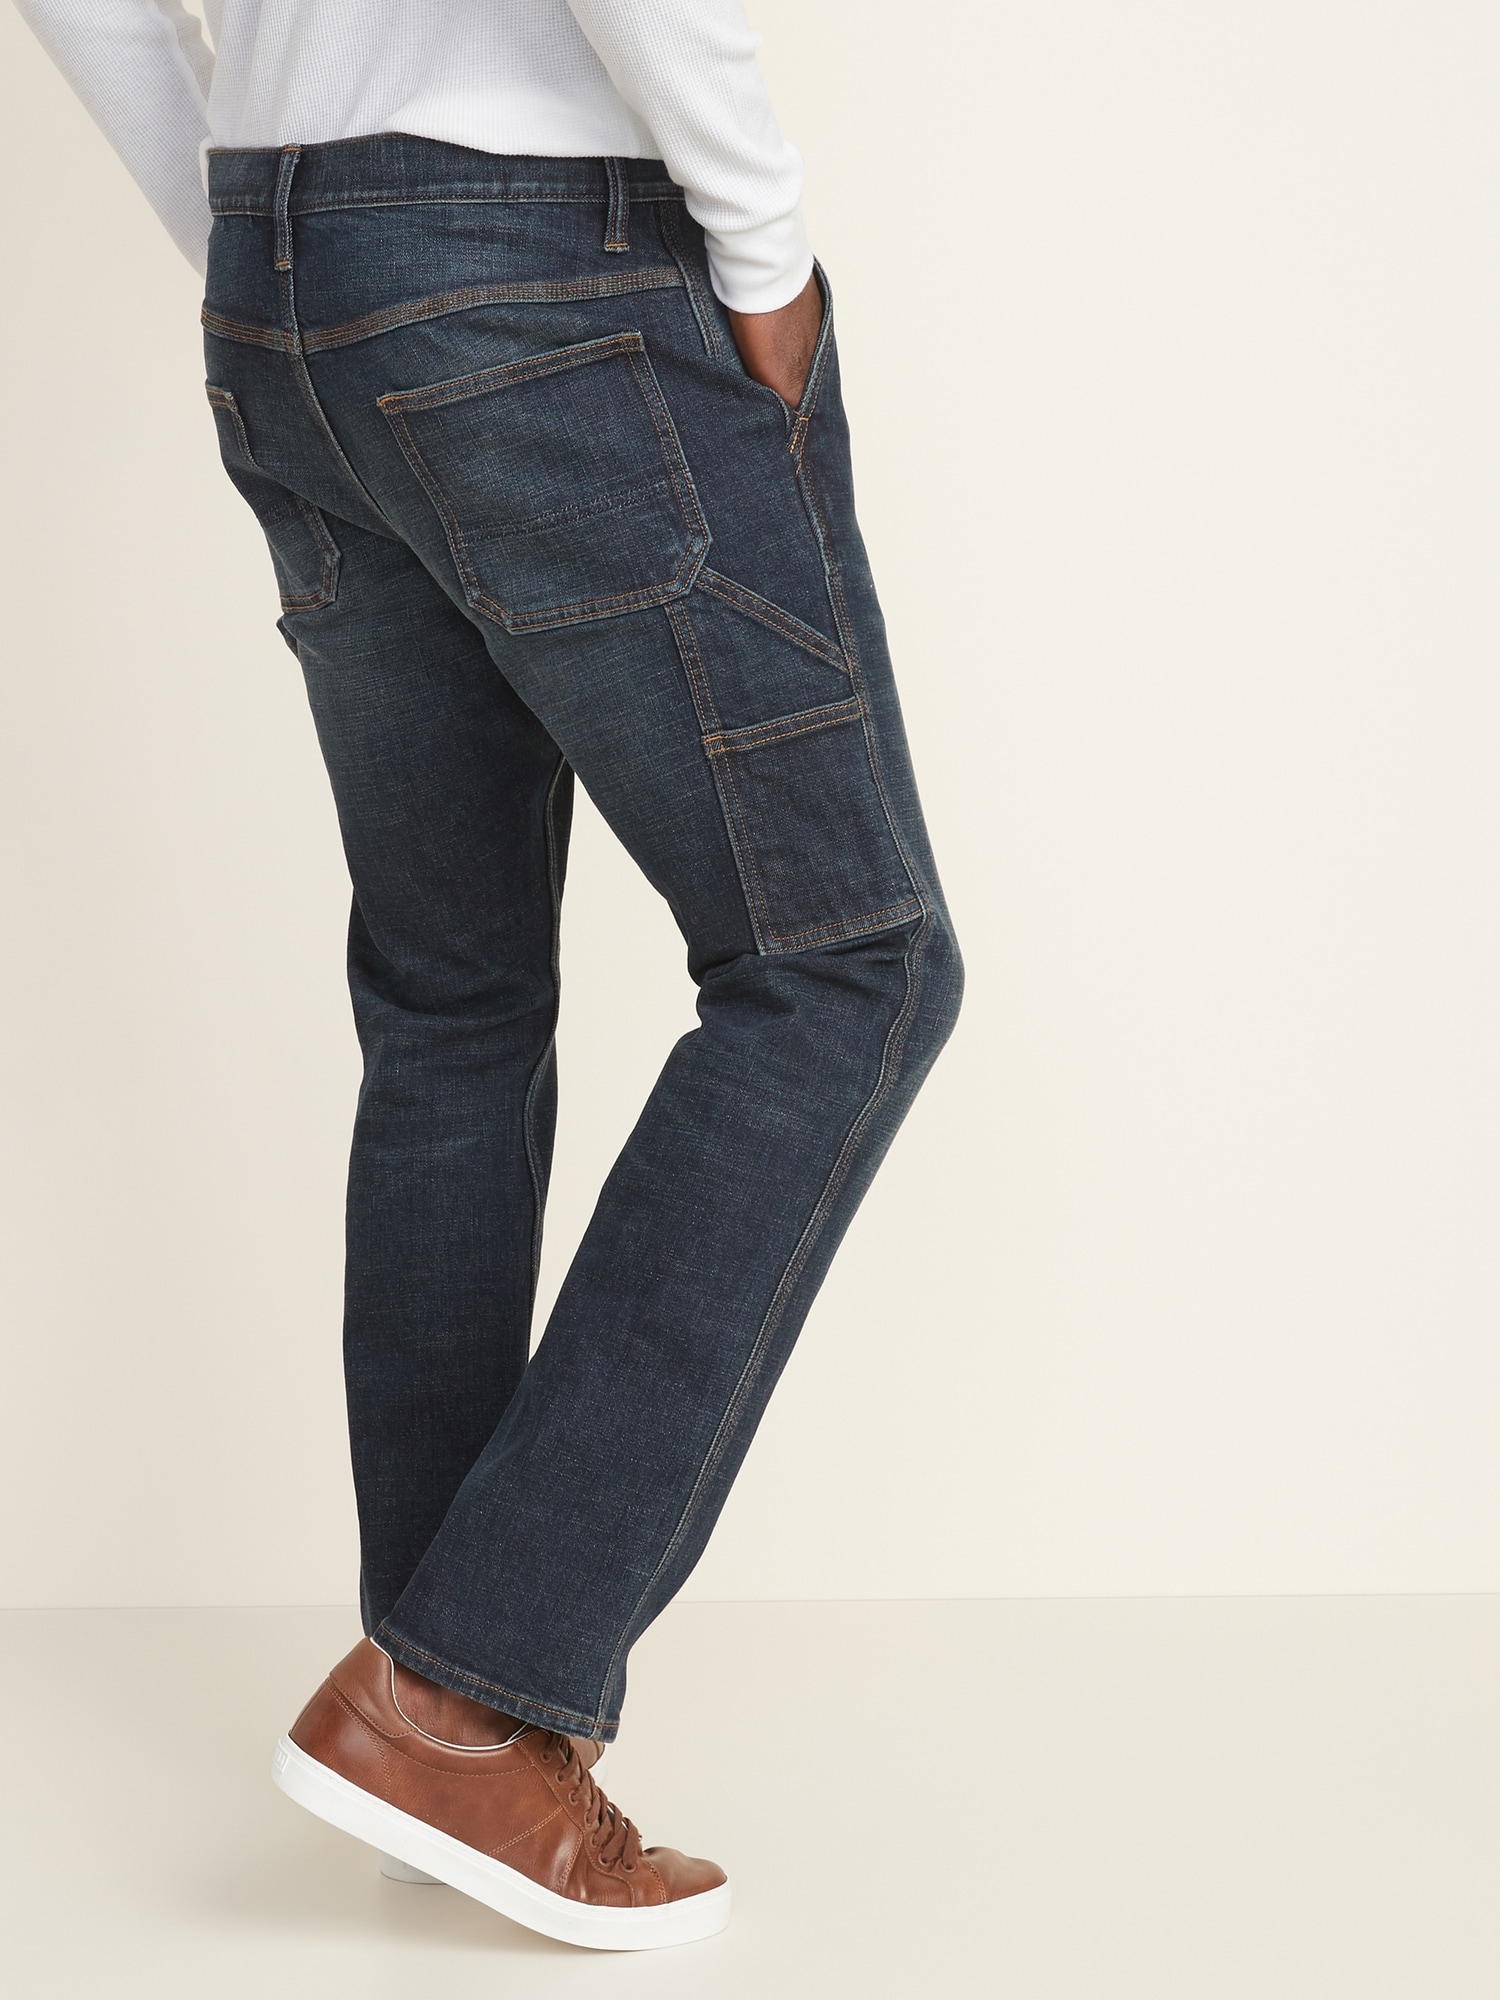 flex fit carpenter jeans